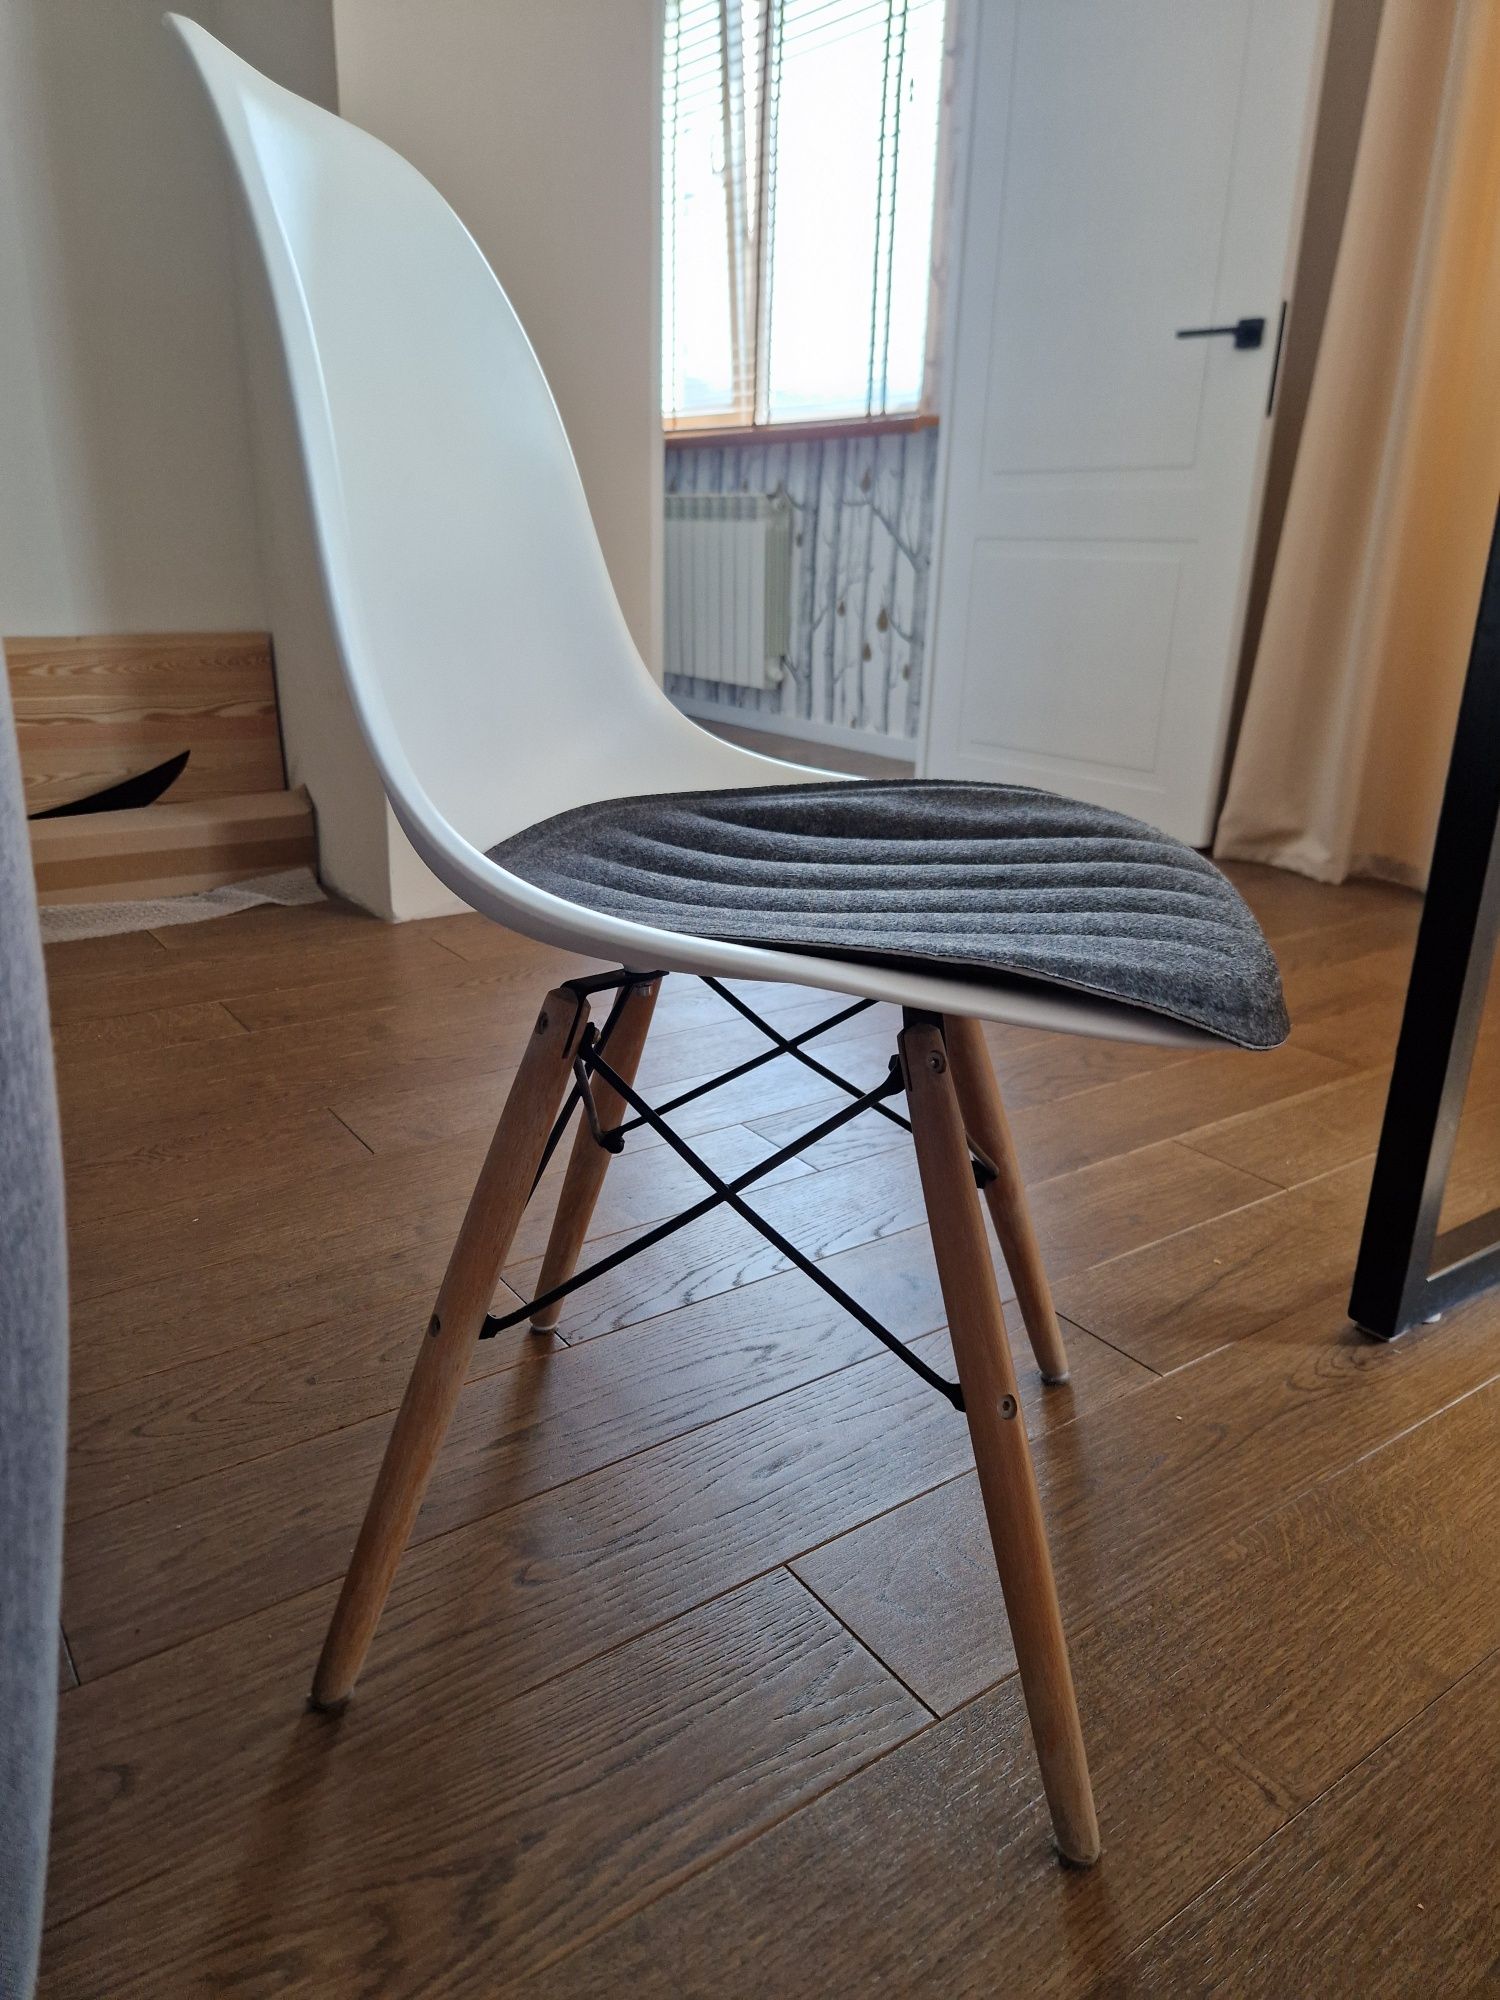 Сидушка IKEA PYNTEN на стул